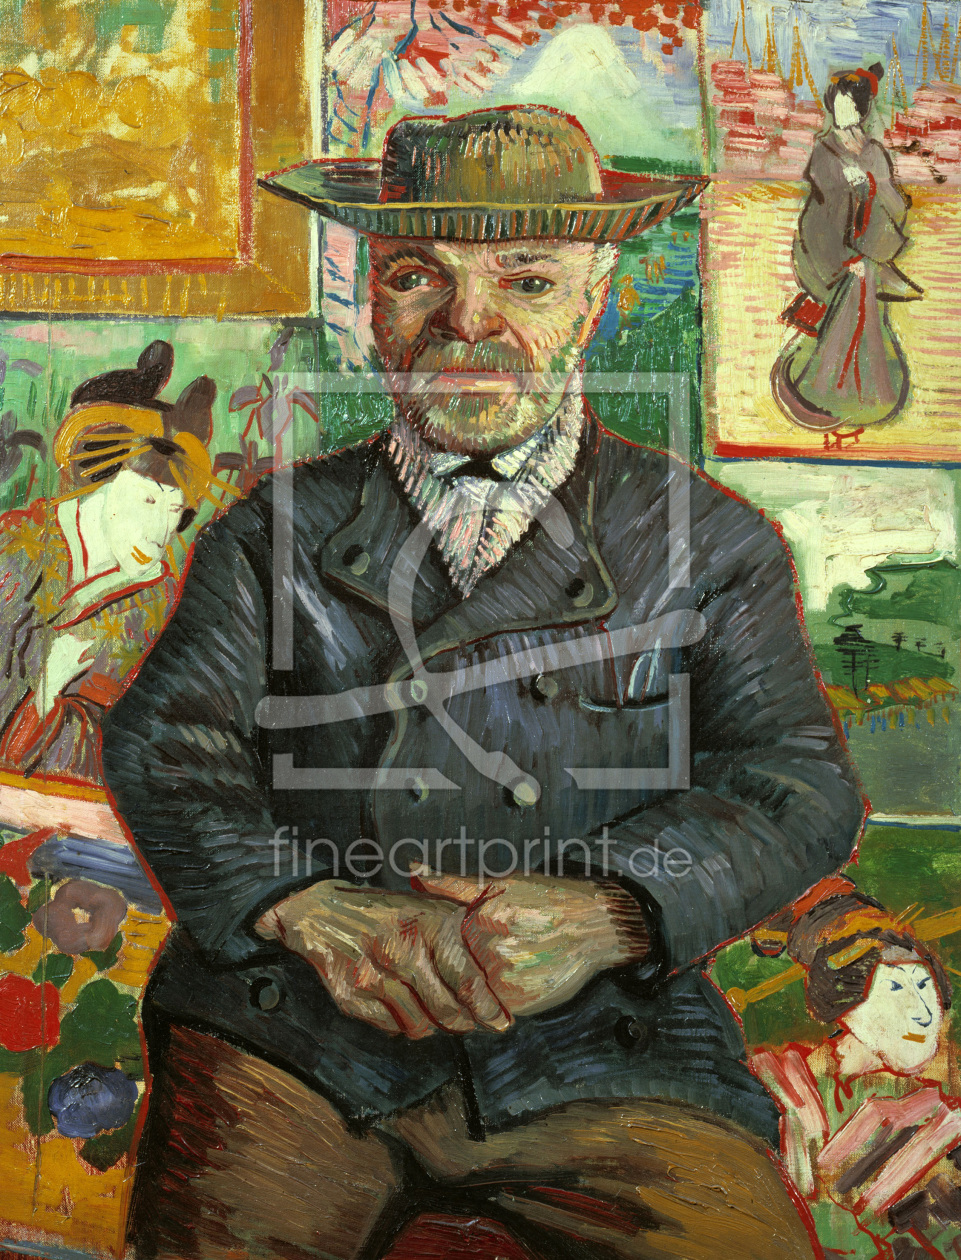 Bild-Nr.: 30003398 van Gogh / Portrait of Pere Tanguy /1887 erstellt von van Gogh, Vincent